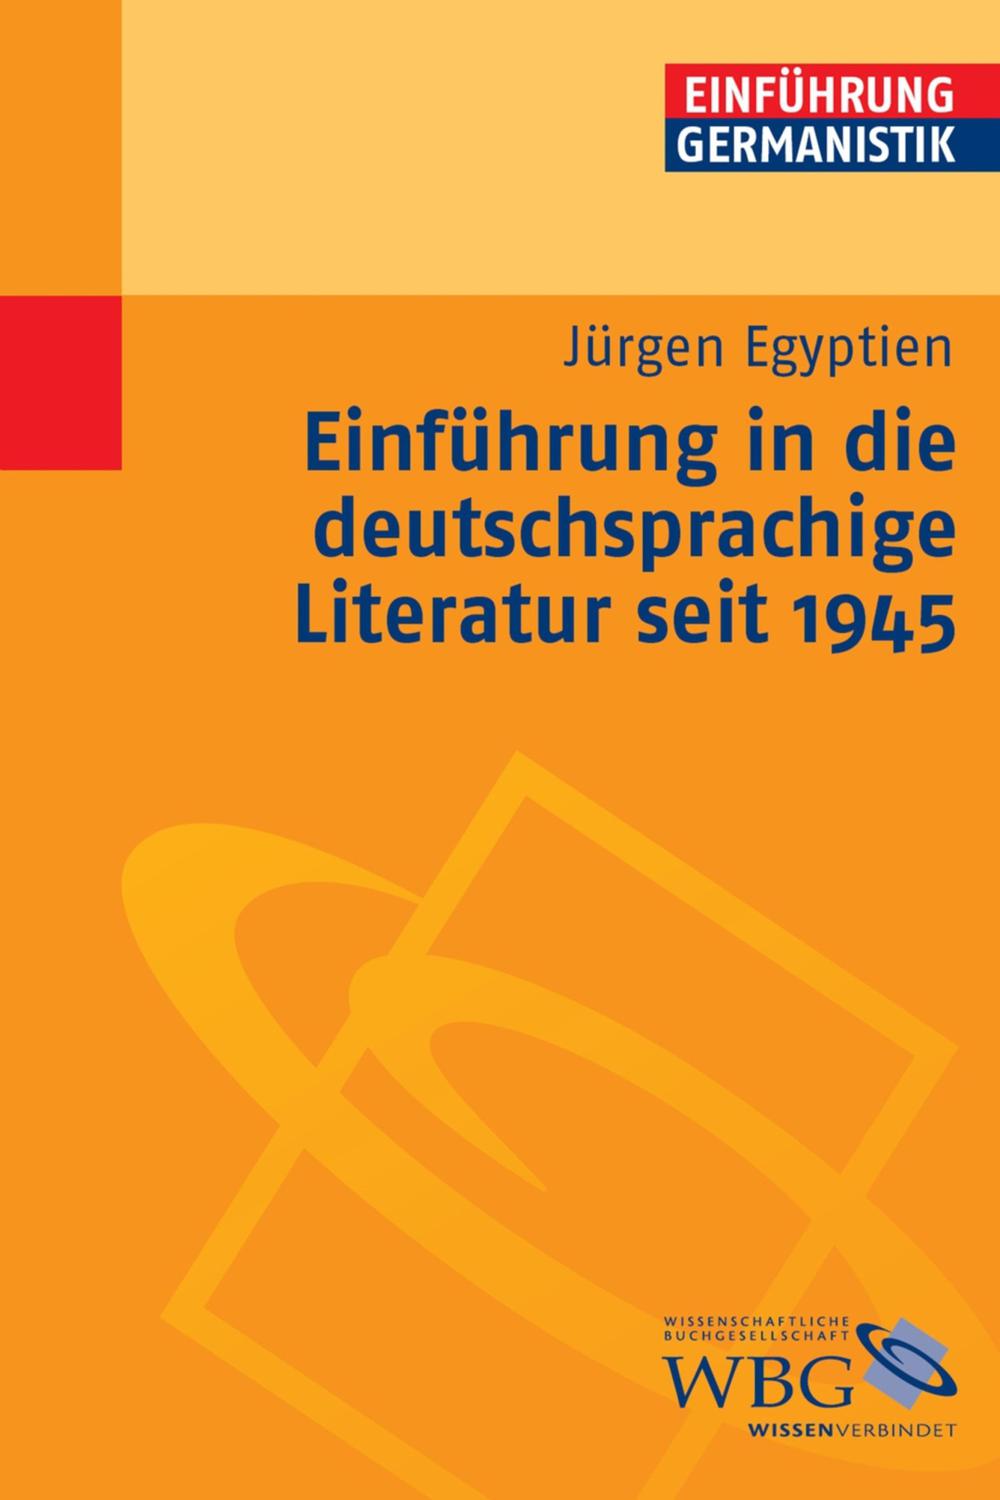 Einführung in die deutschsprachige Literatur nach 1945 - Jürgen Egyptien